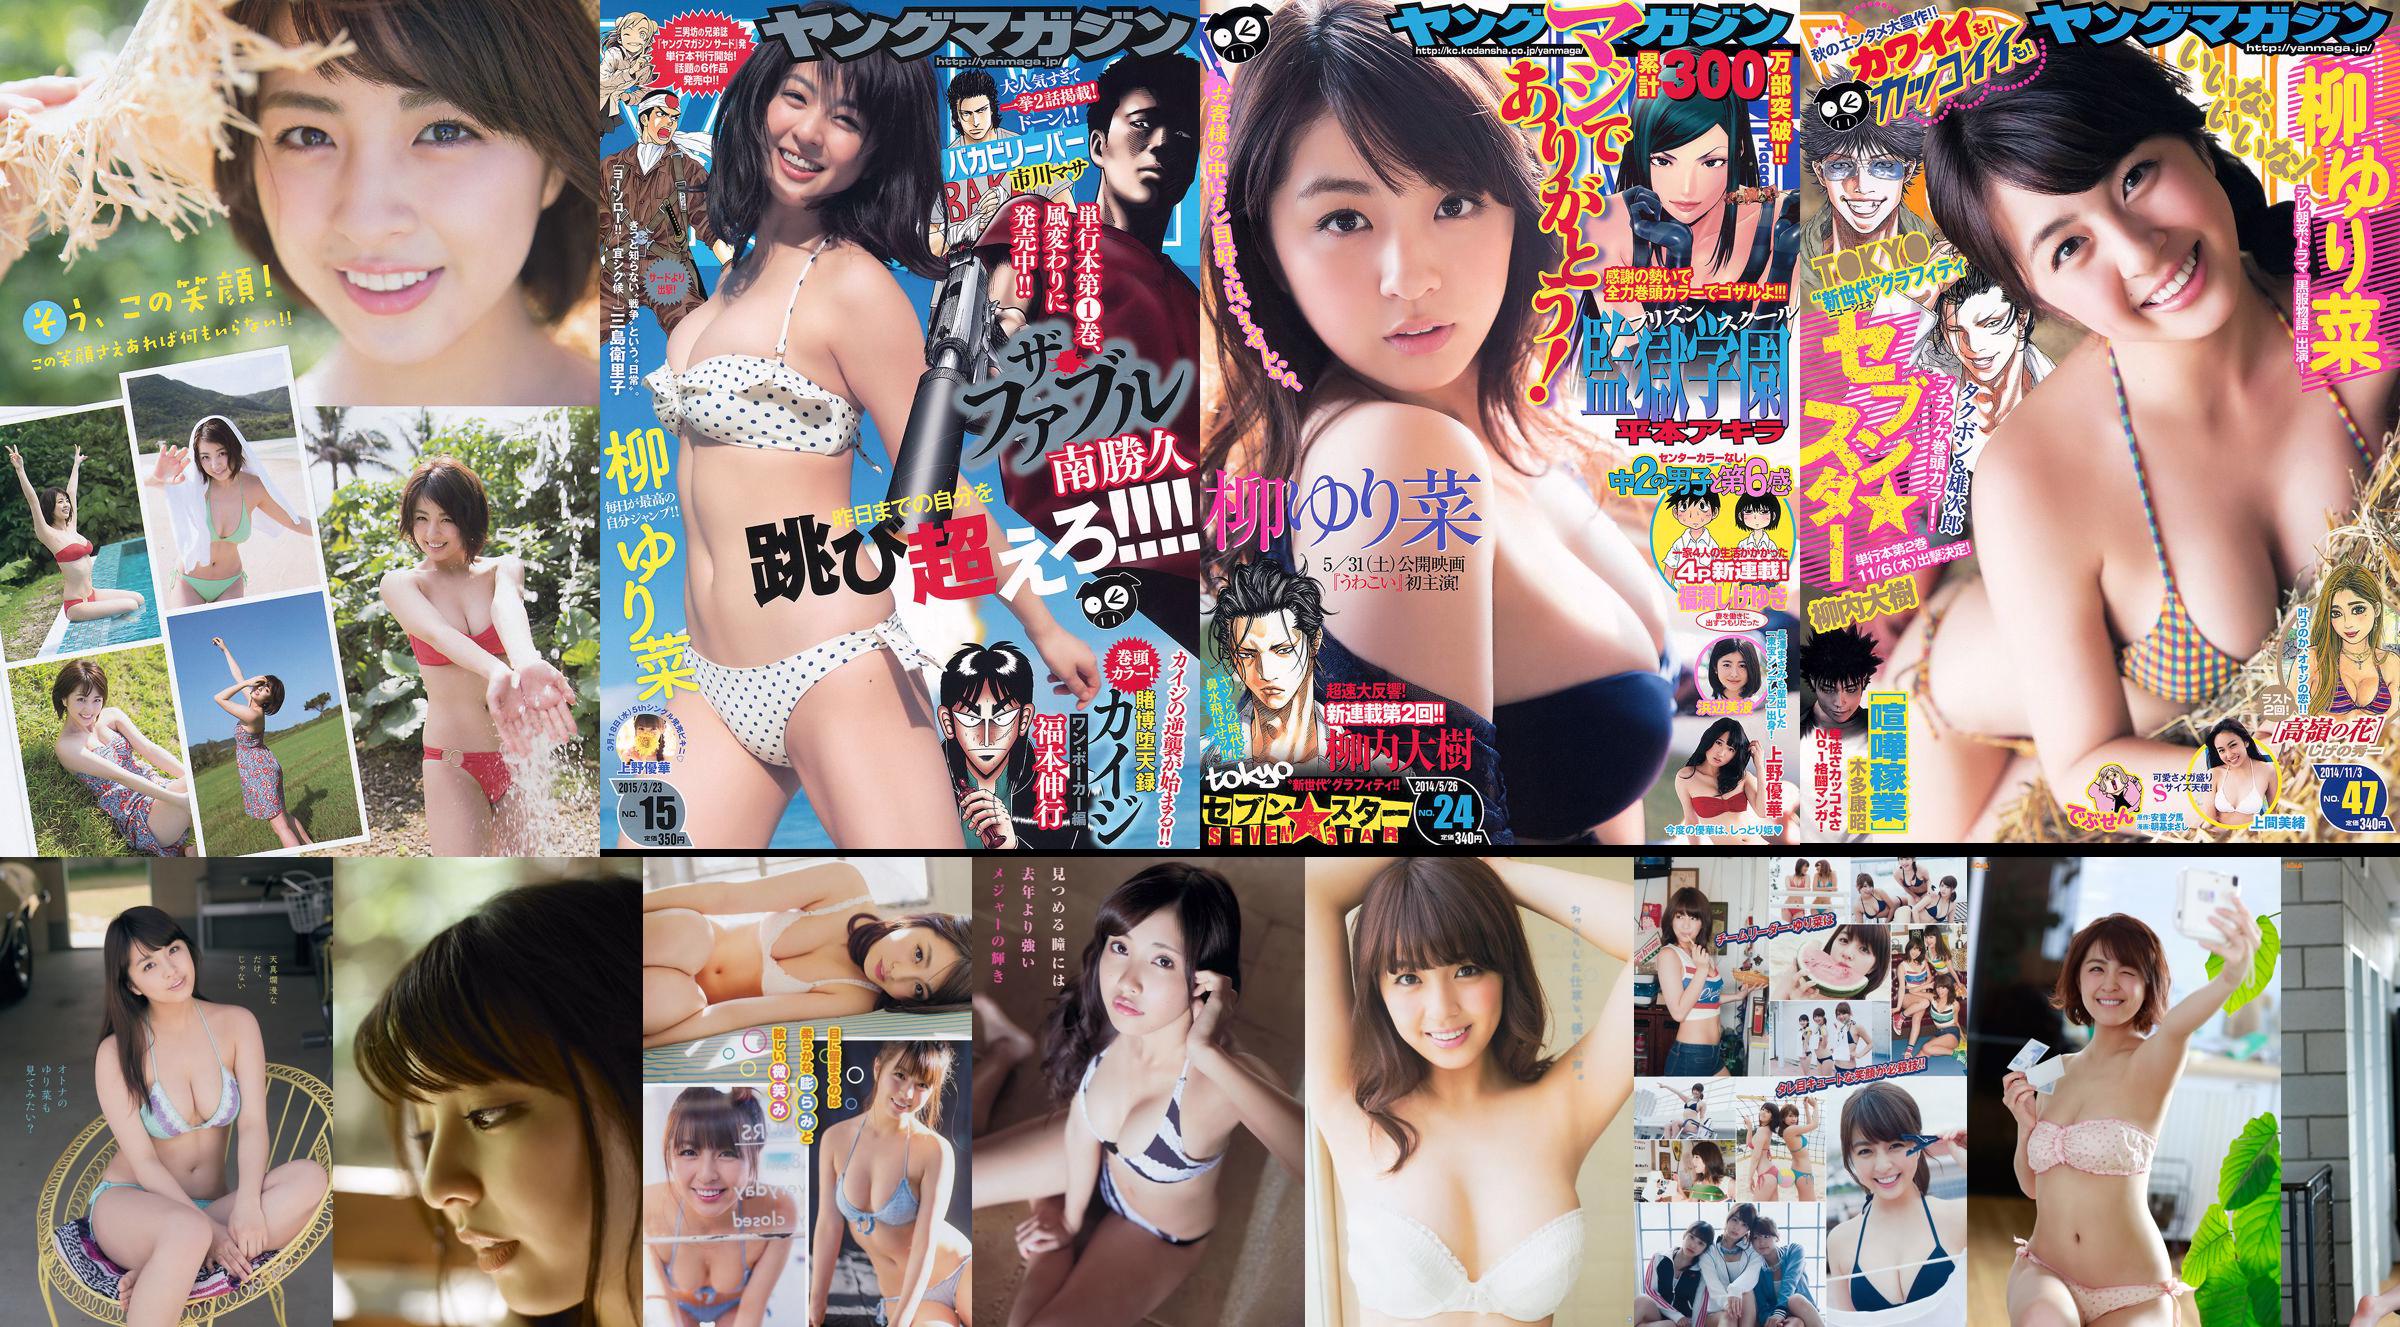 [Young Magazine] Yurina Yanagi Ikumi Hisamatsu Sayaka Tomaru 2015 No.30 Photograph No.abda6f Page 4